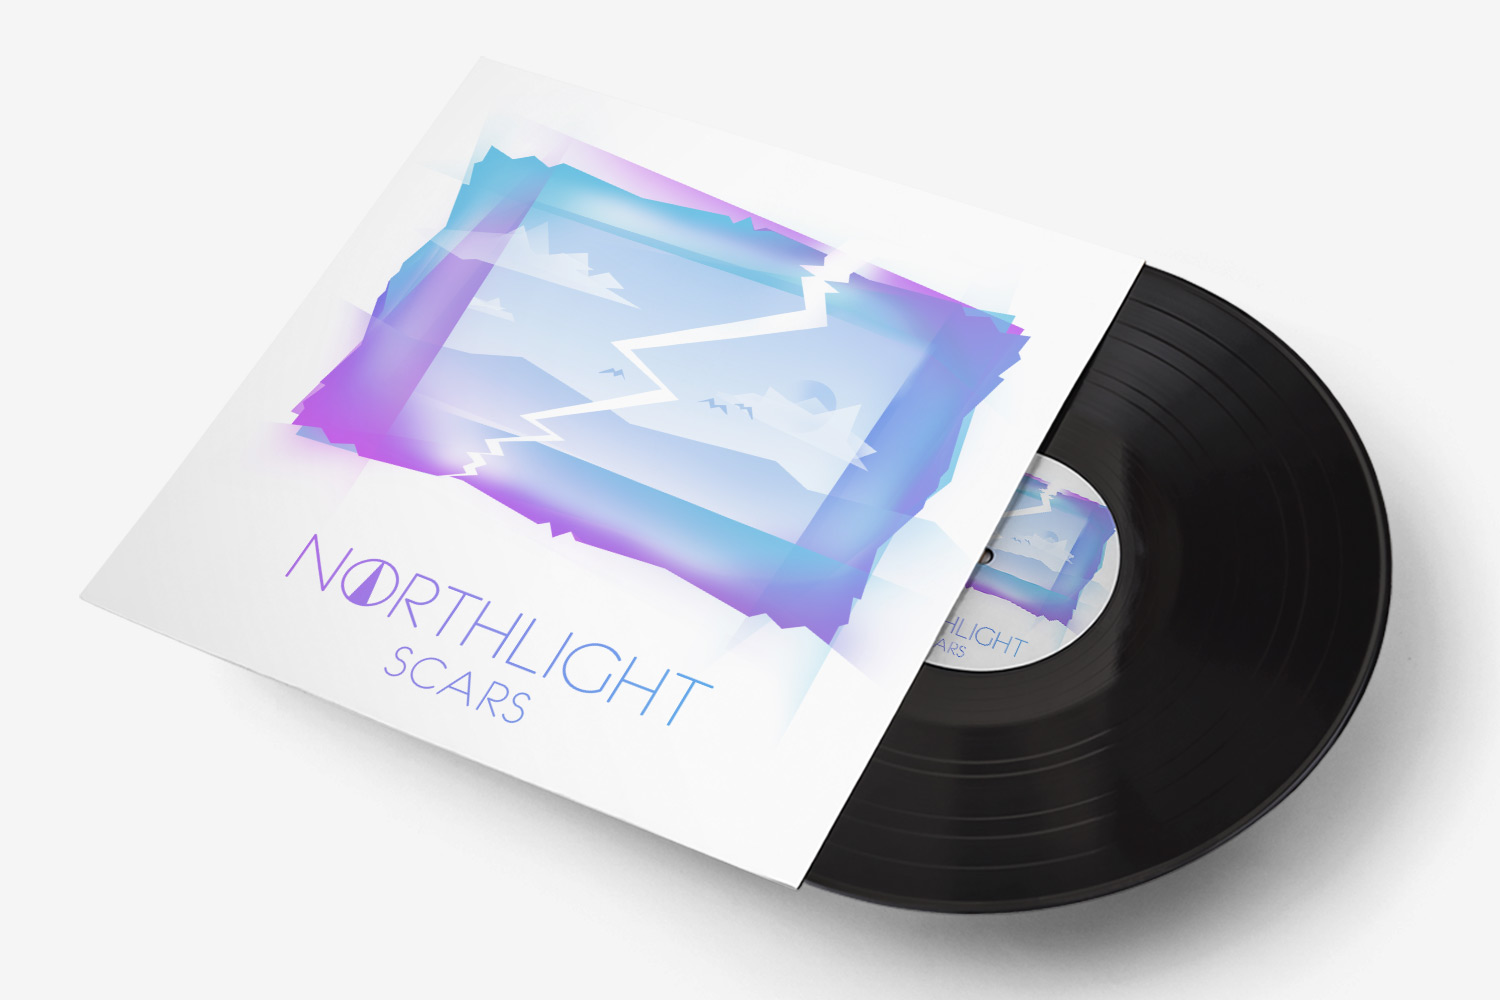 Northlight